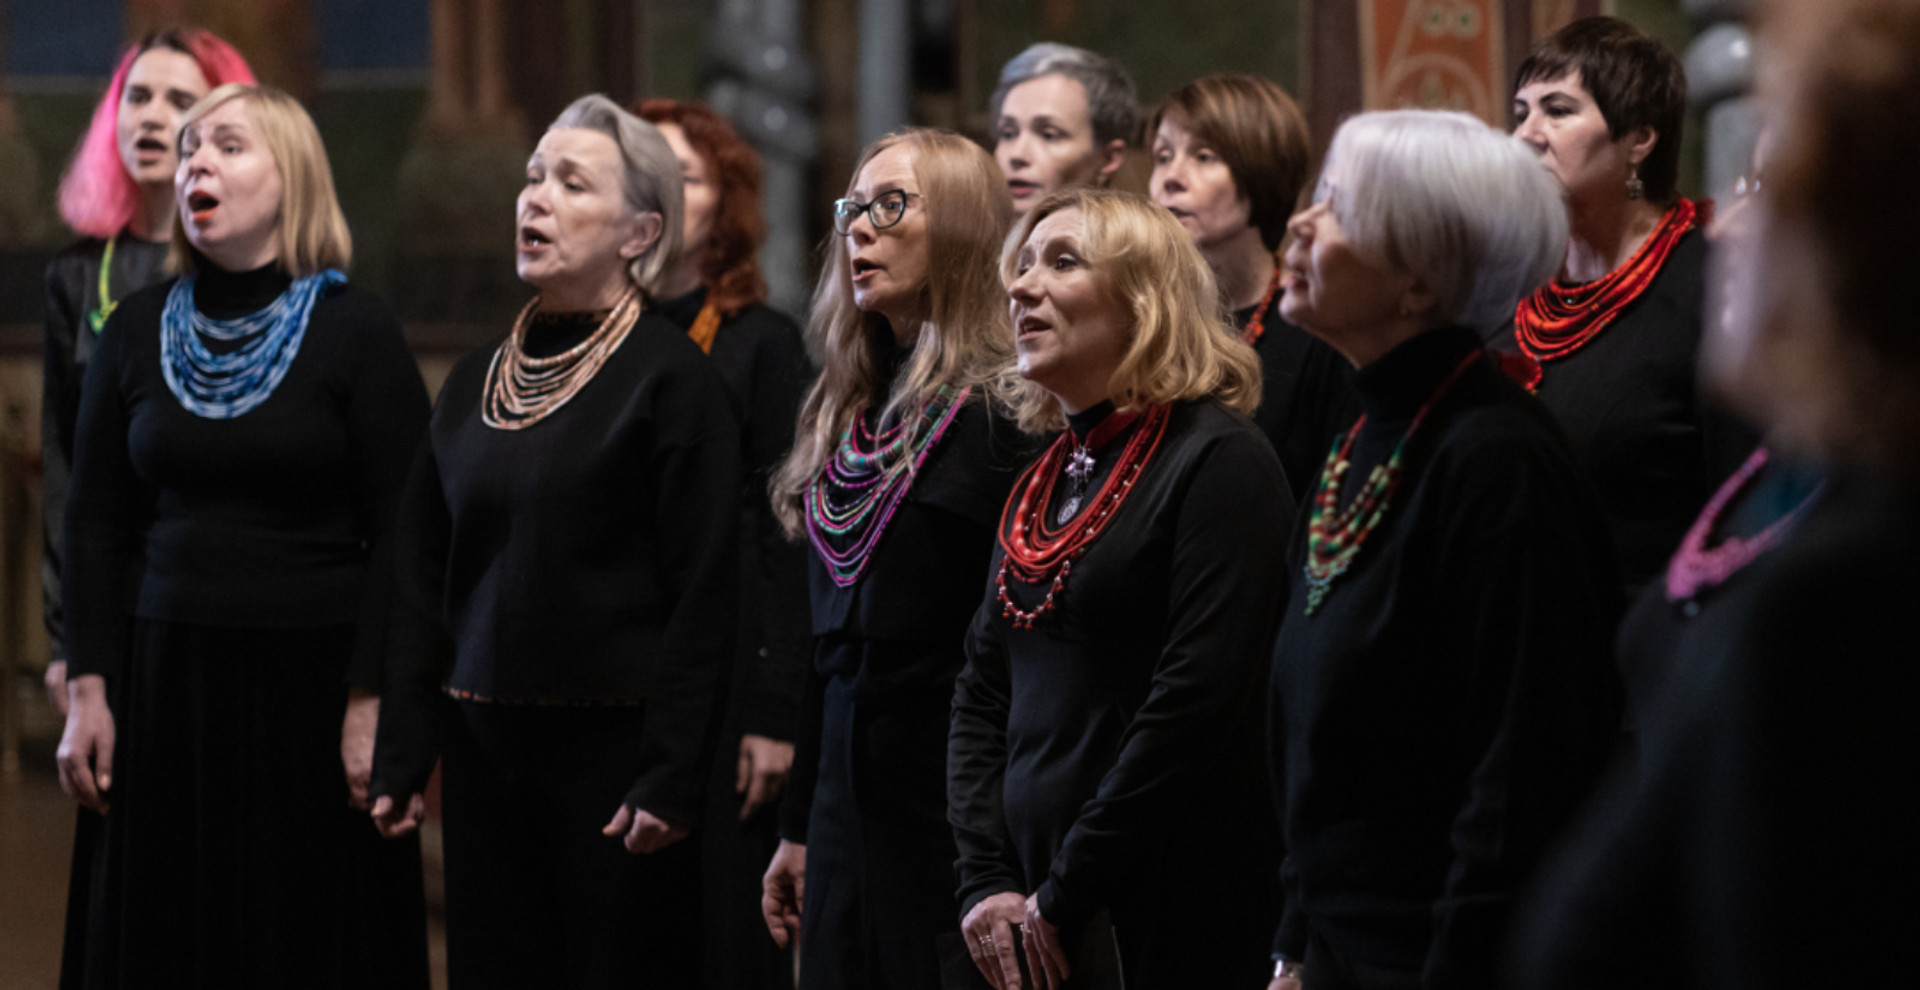 Коли слухаєш барокову музику – здається, що летиш: у Кирилівській церкві заспівали одразу два хори